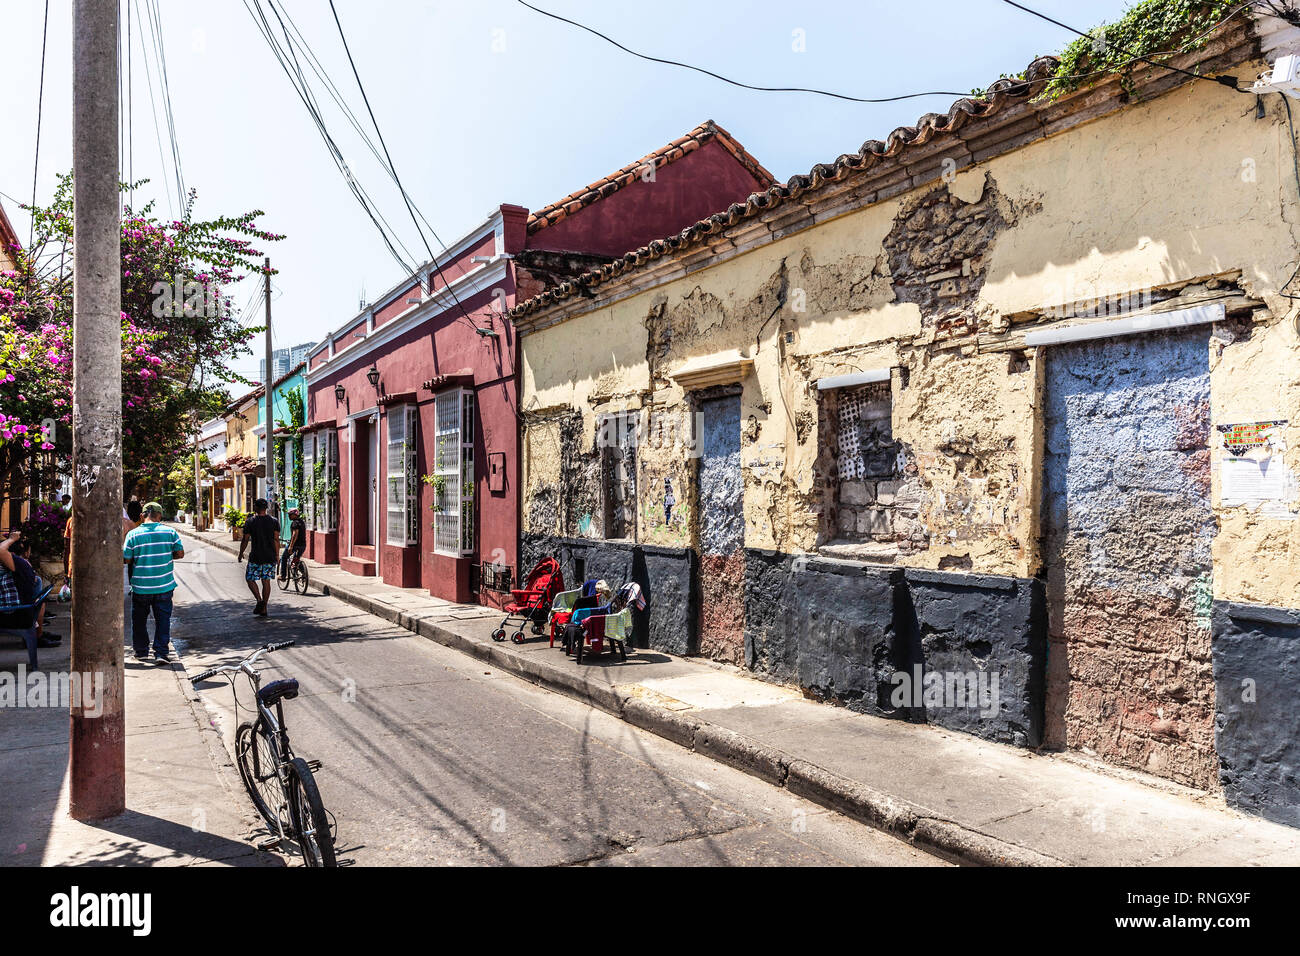 Calle del Pozo, Barrio Getsemaní, Cartagena de Indias, Colombia. Stock Photo